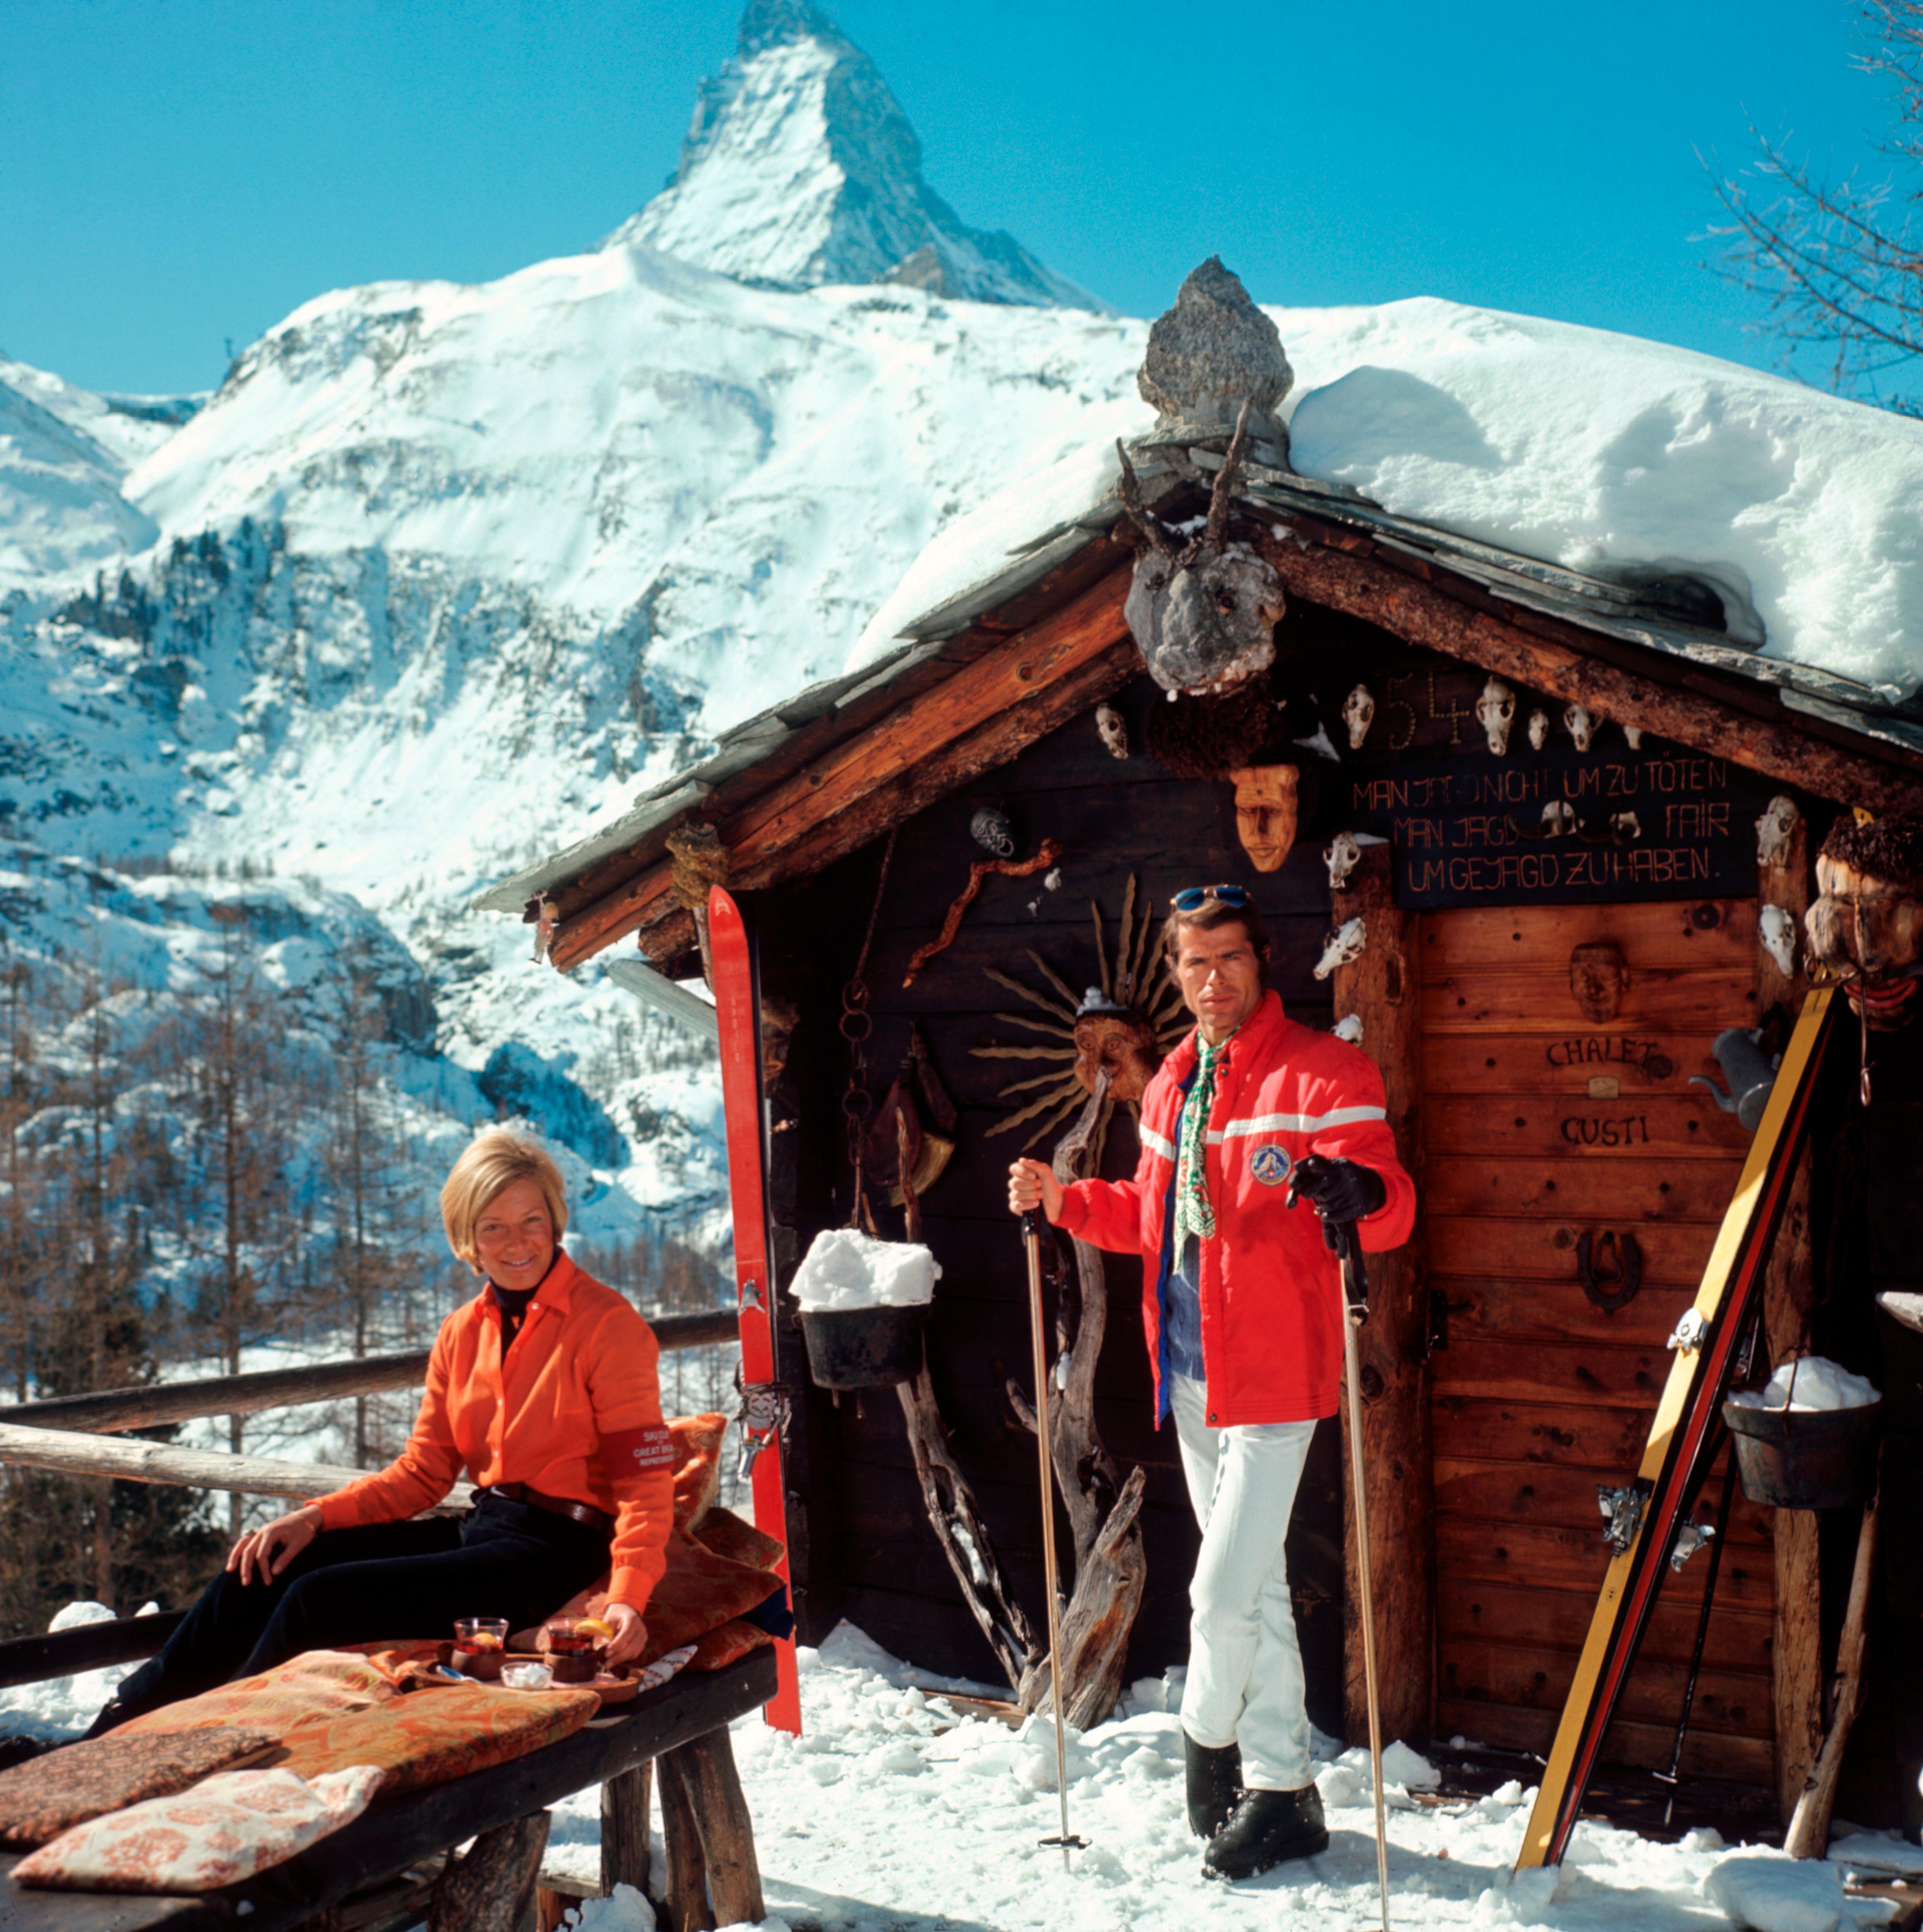 Skifahren in Vail II, 1960
Chromogener Lambda-Druck
Nachlassauflage von 150 Stück

Eine Gruppe von Skifahrern steht in einer Schlange und wartet auf den Skilift in Vail, Colorado, USA, 1964. 

Nachlassgestempelte und handnummerierte Auflage von 150